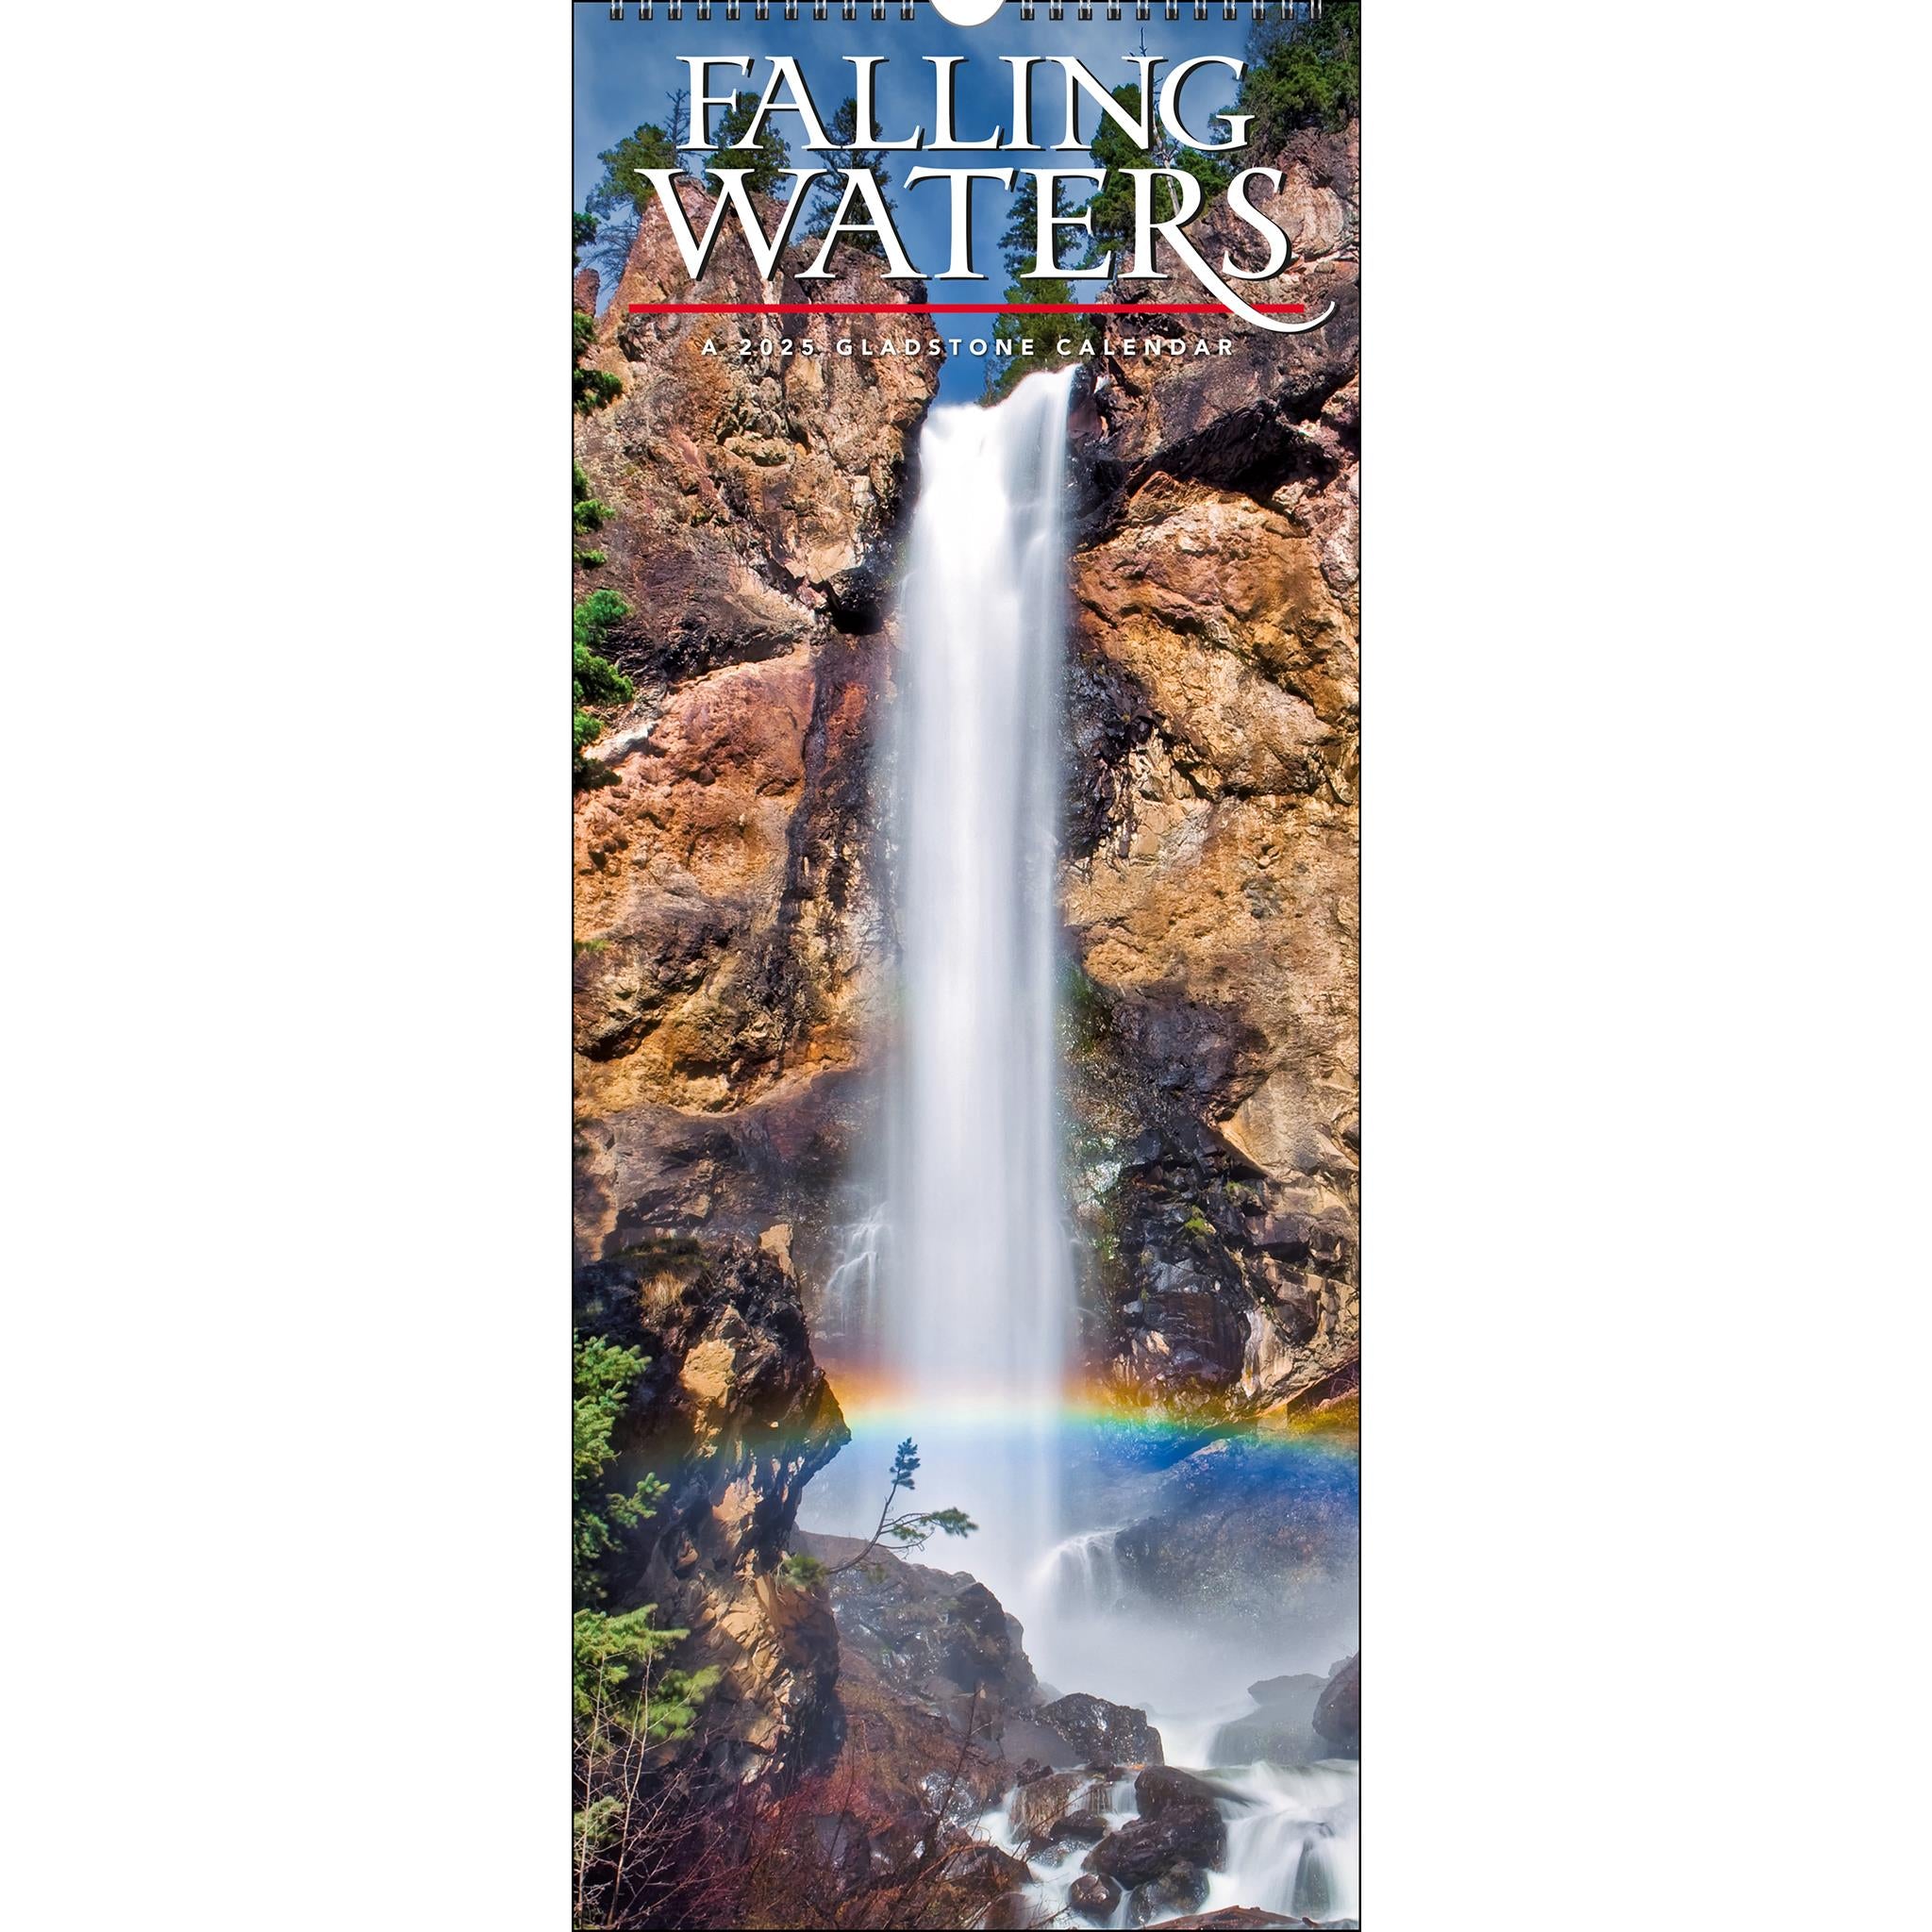 Falling Waters Poster 2025 Calendar